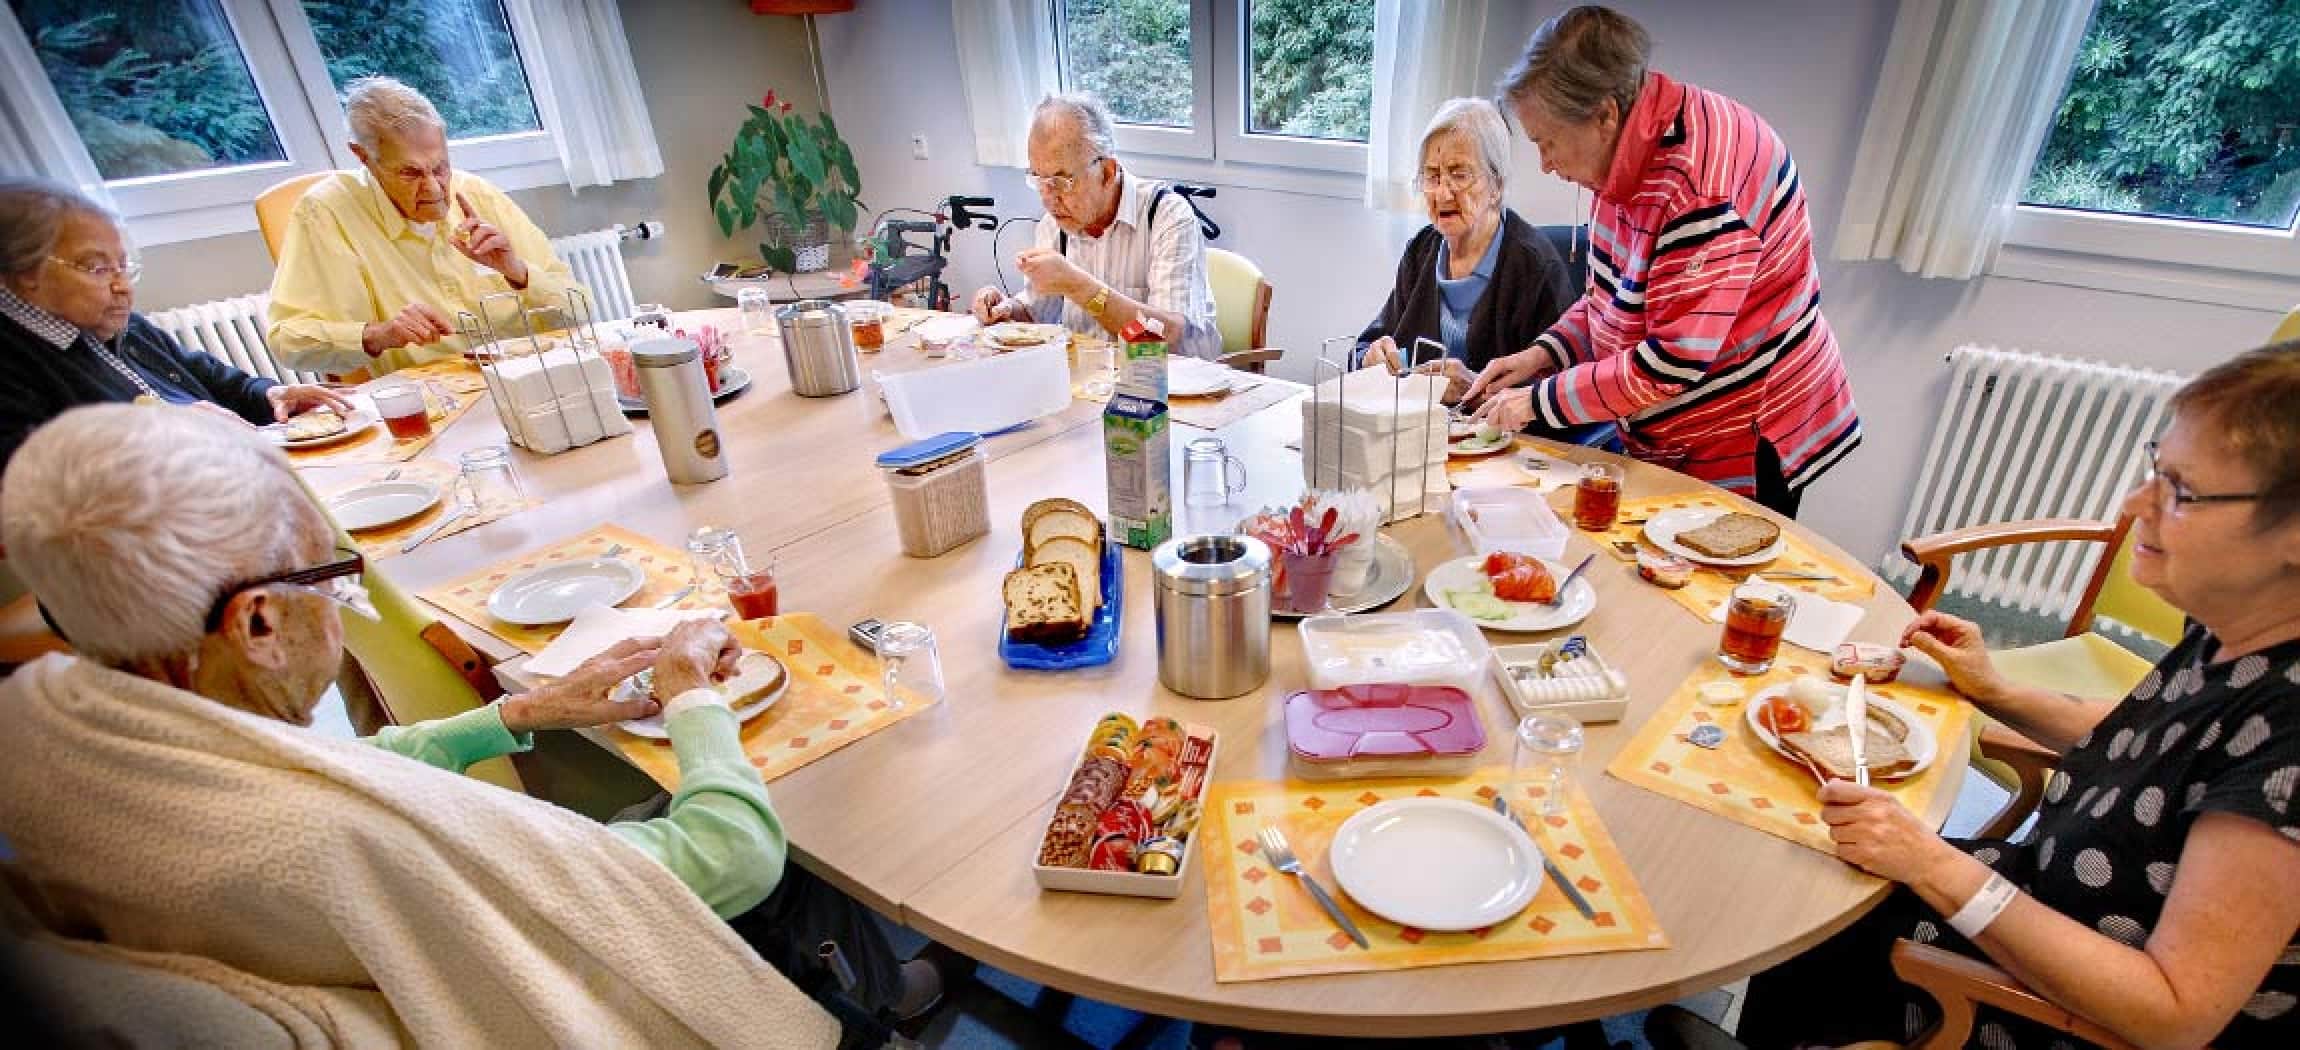 Groep ouderen in revalidatieafdeling eten samen aan tafel